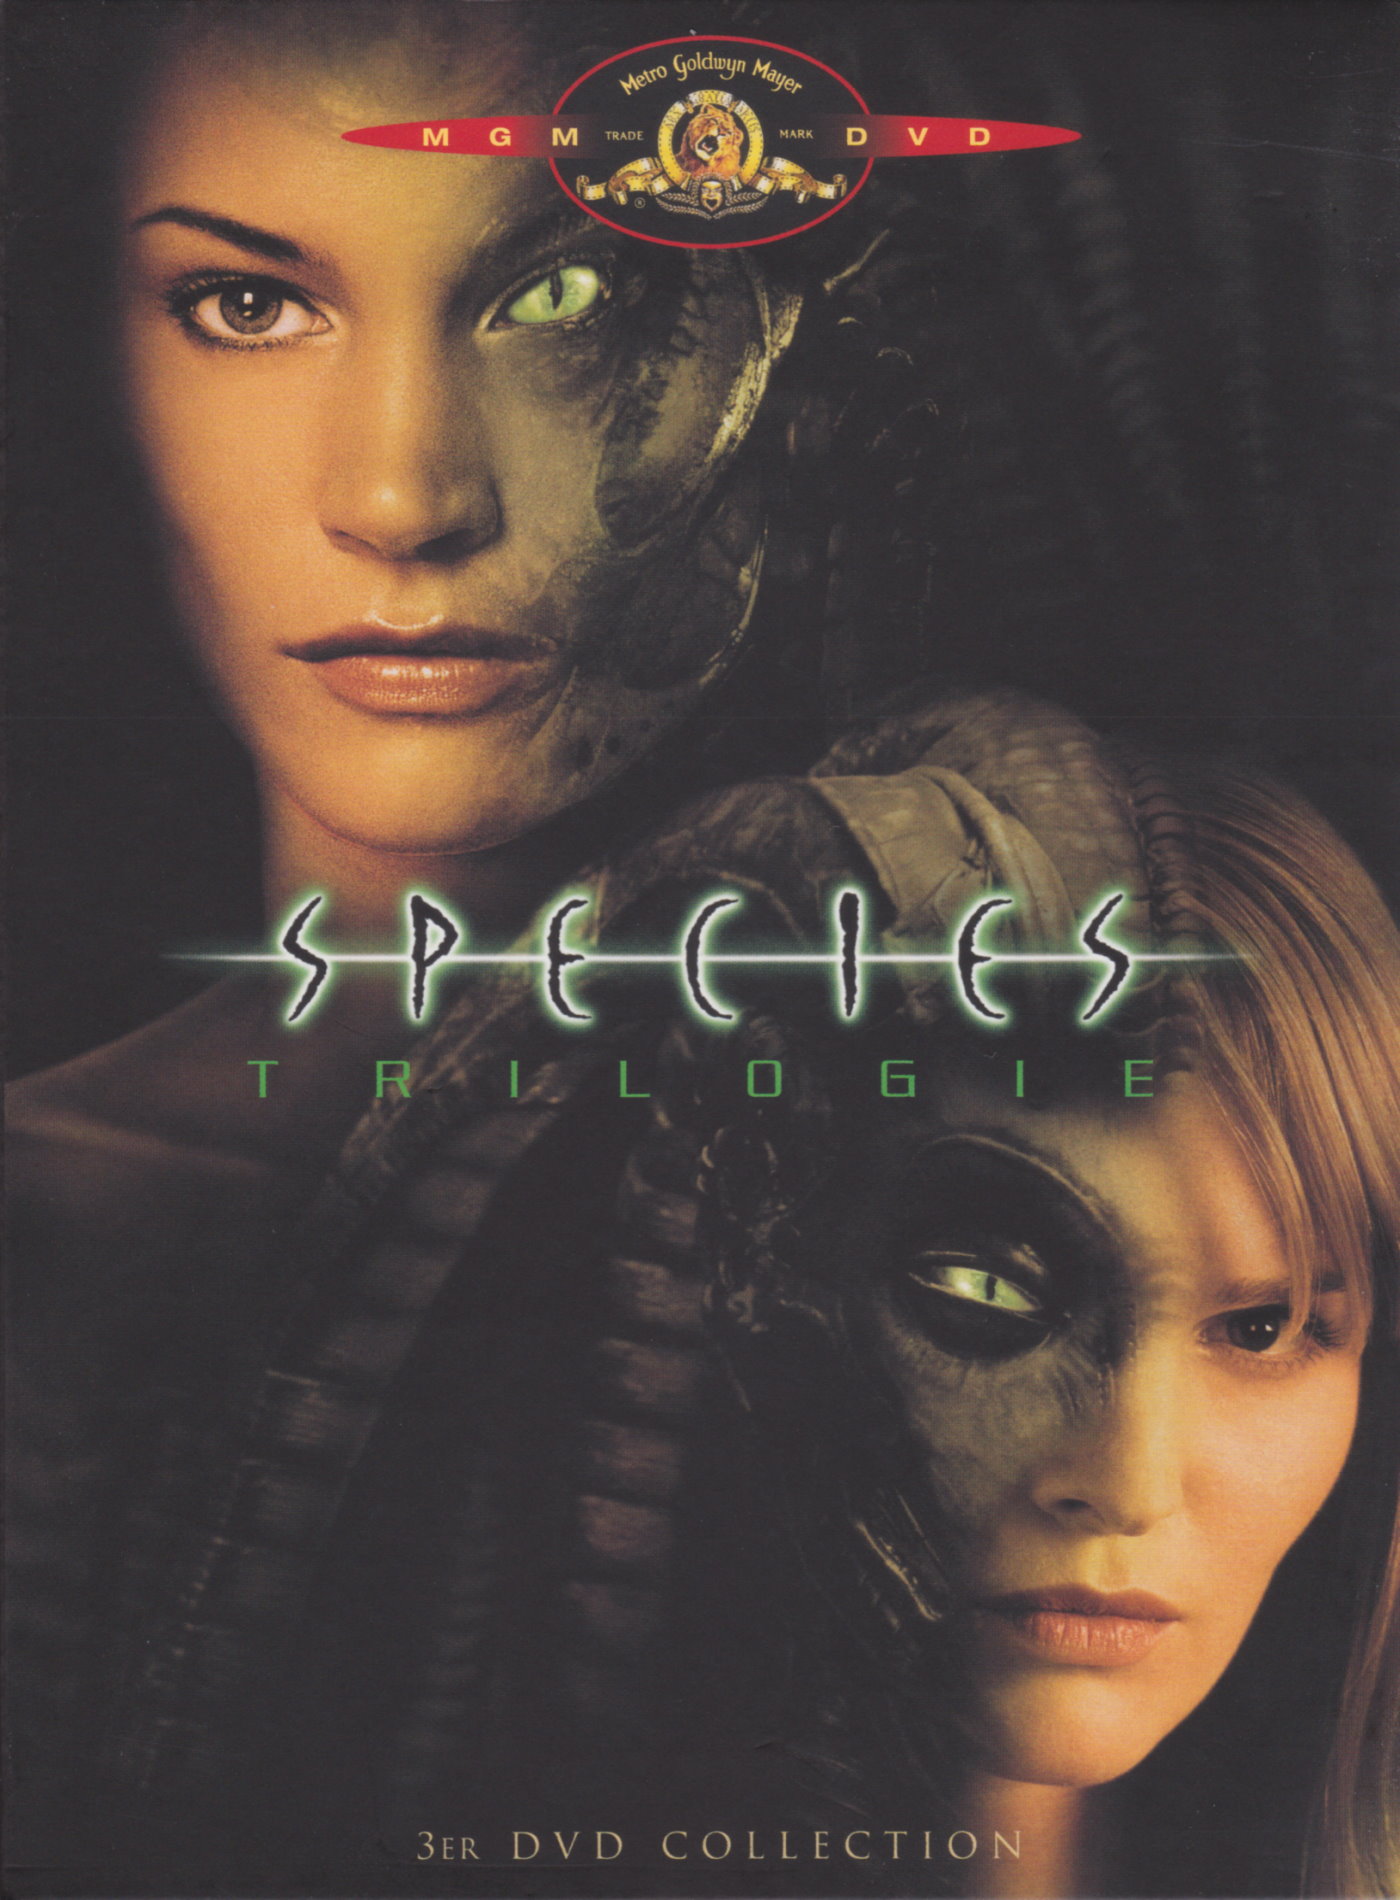 Cover - Species III.jpg